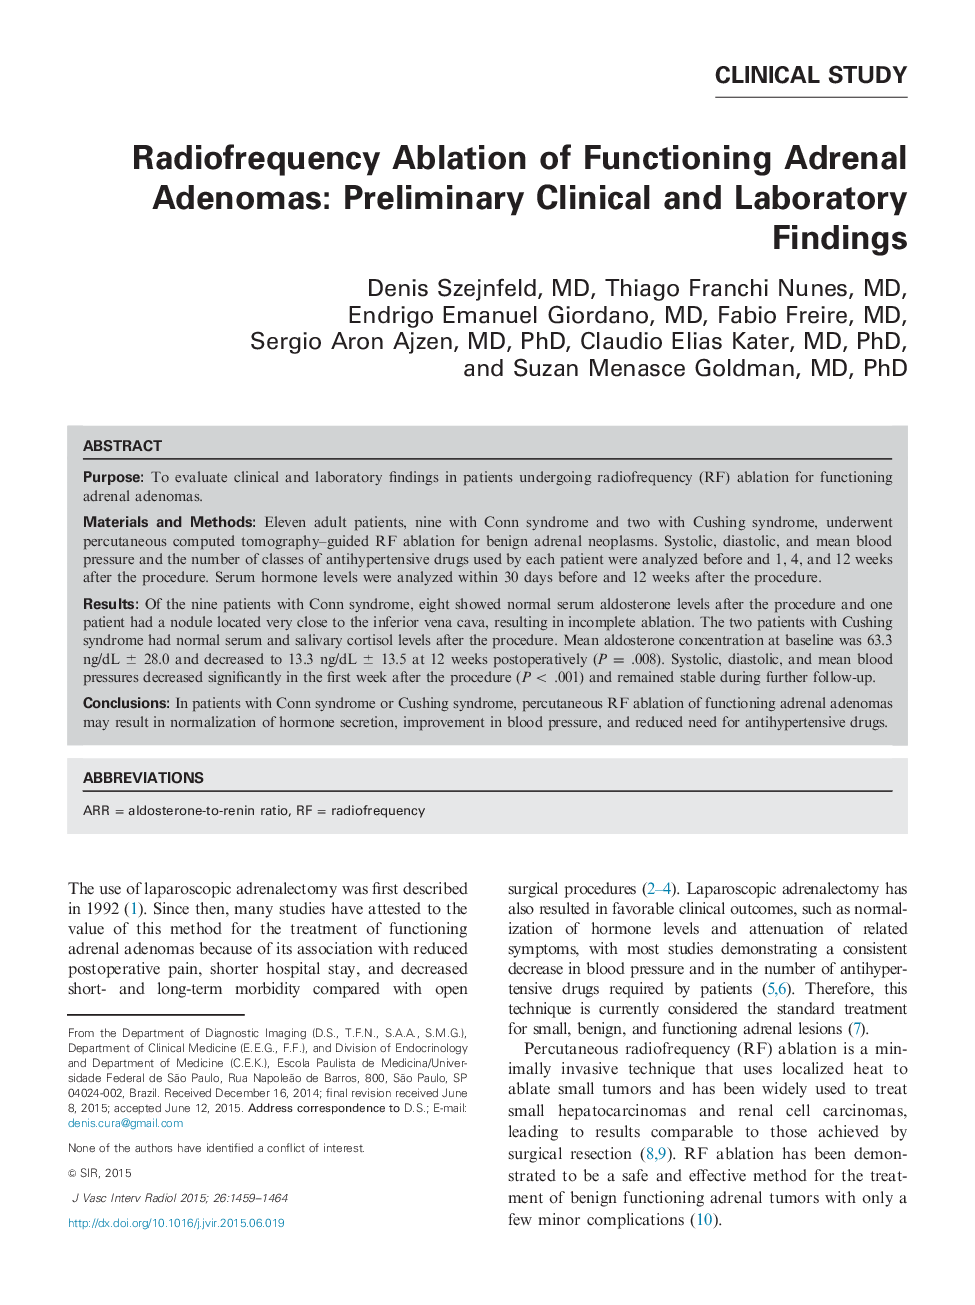 ردیابی رادیوفرنس آدنوم های آدنوم عملکردی: یافته های بالینی و آزمایشگاهی مقدماتی 